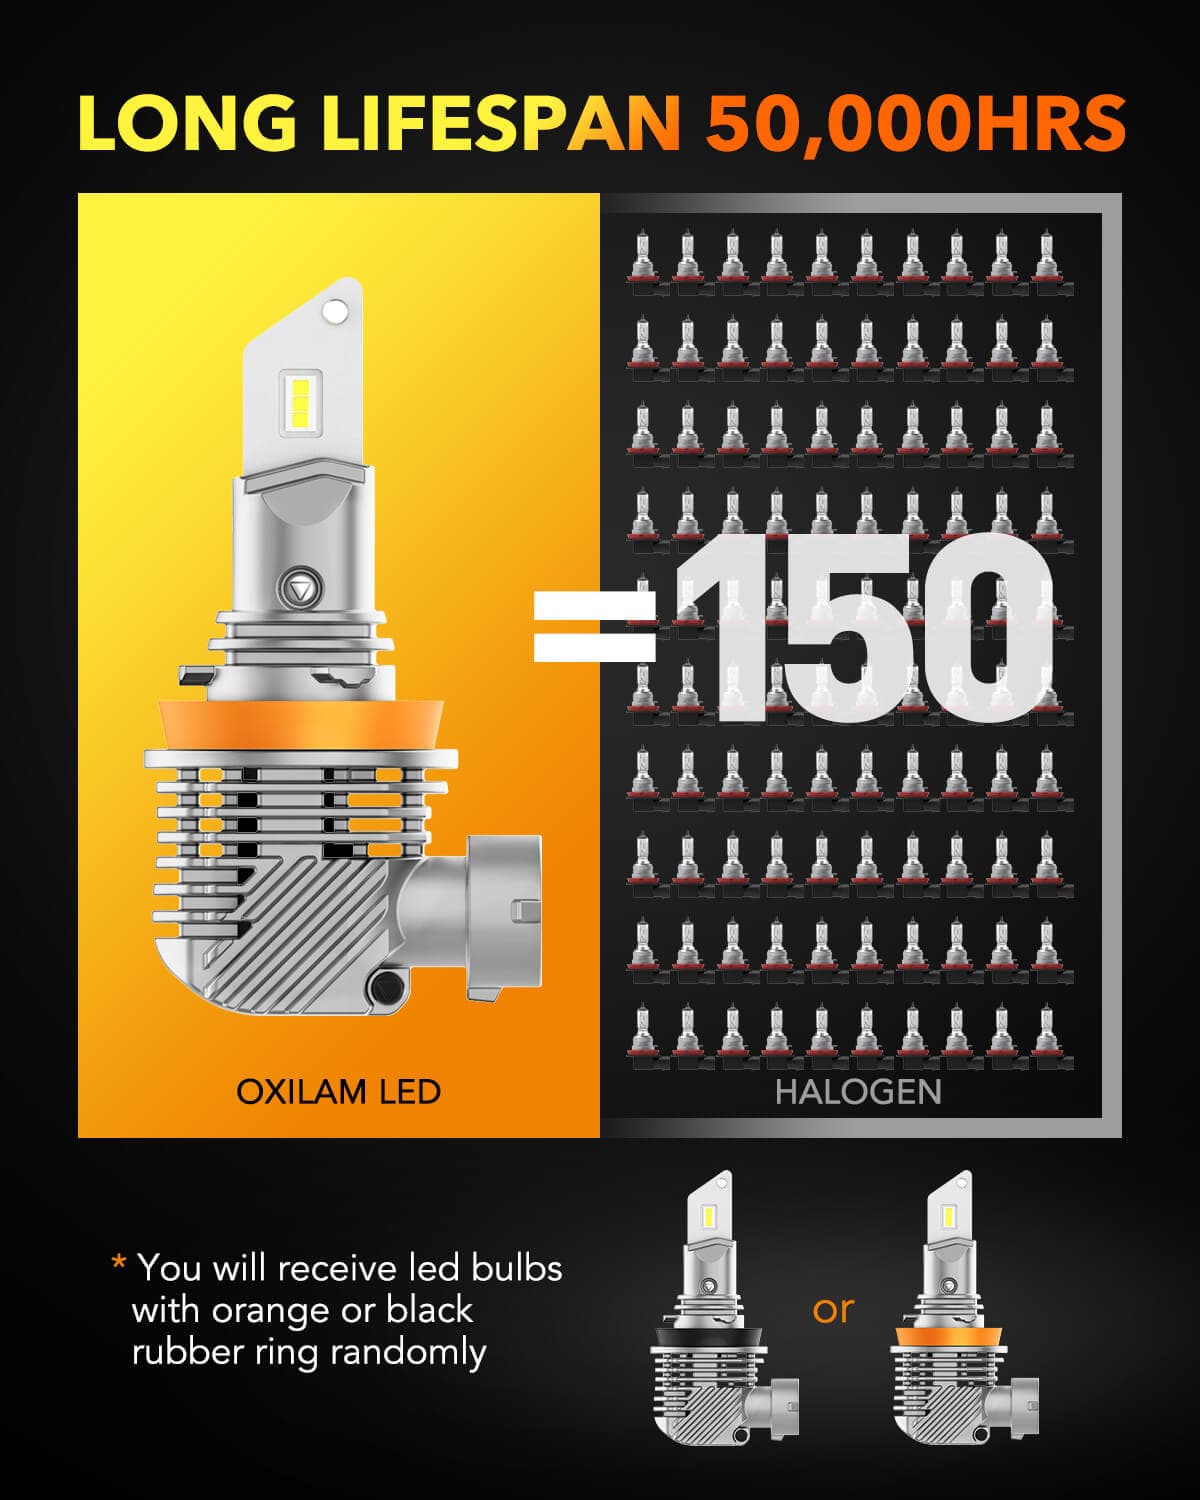 OXILAM H11 LED Headlight Bulbs, 13000LM 6000K White Super Bright LED C -  Oxilam